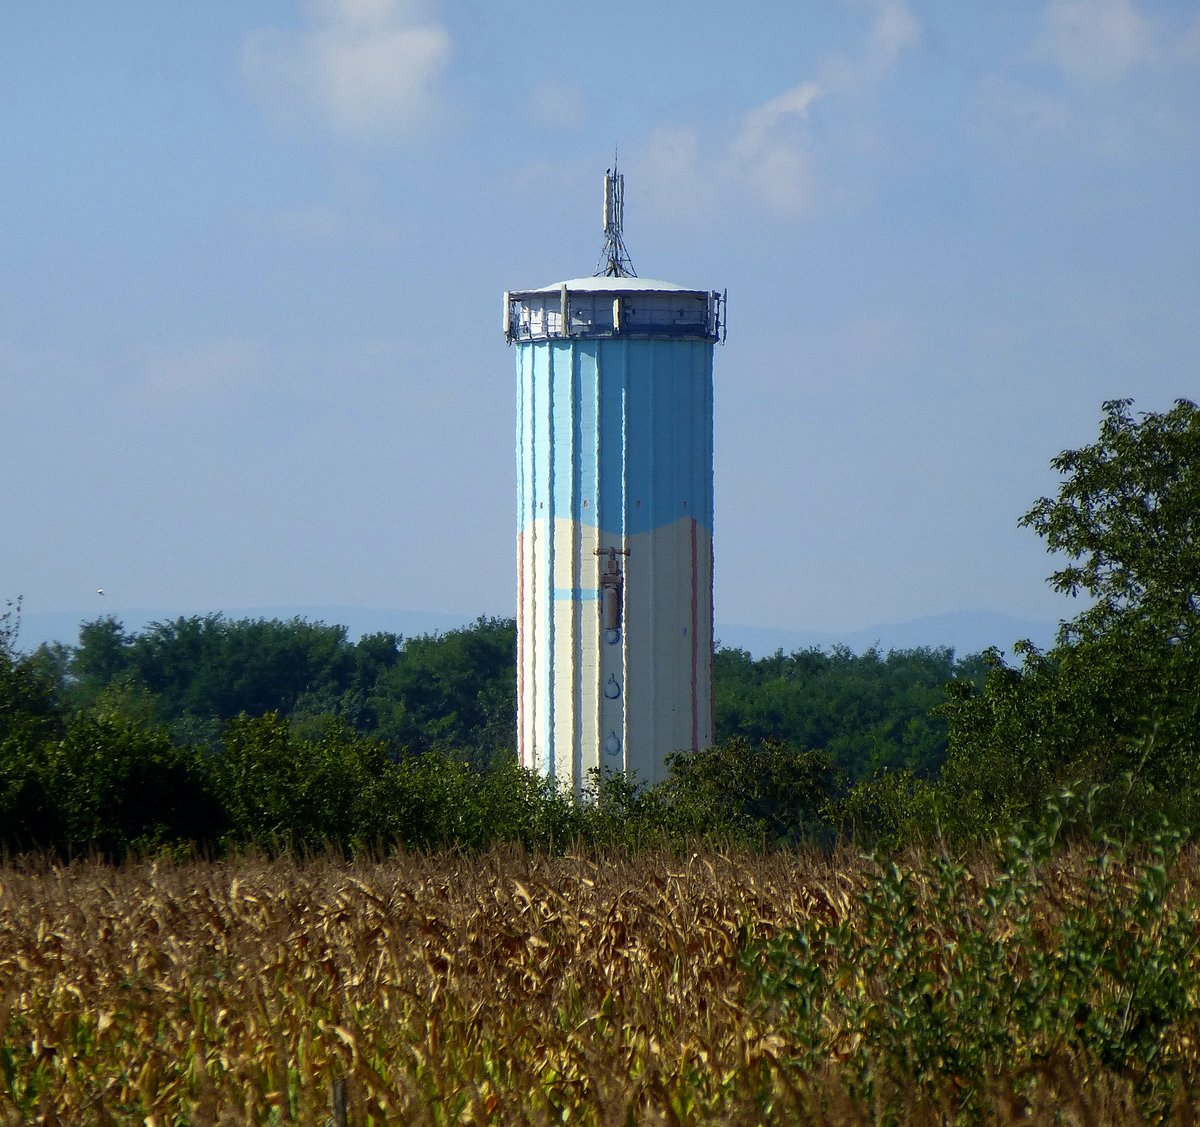 Wittisheim im Unterelsa, der Wasserturm auerhalb der Ortschaft, Sept.2016